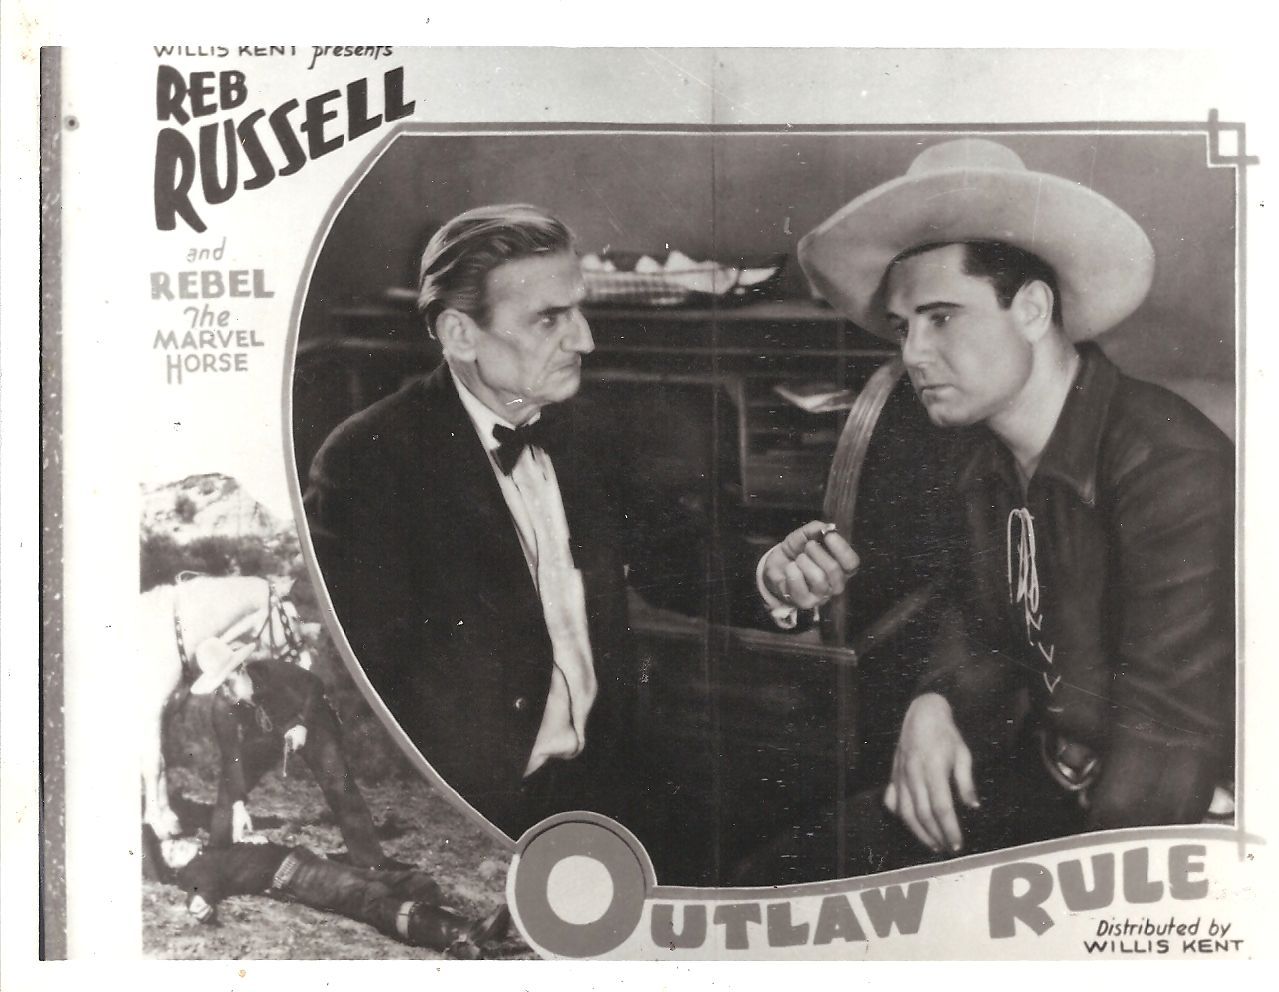 Outlaw Rule (1935) Screenshot 1